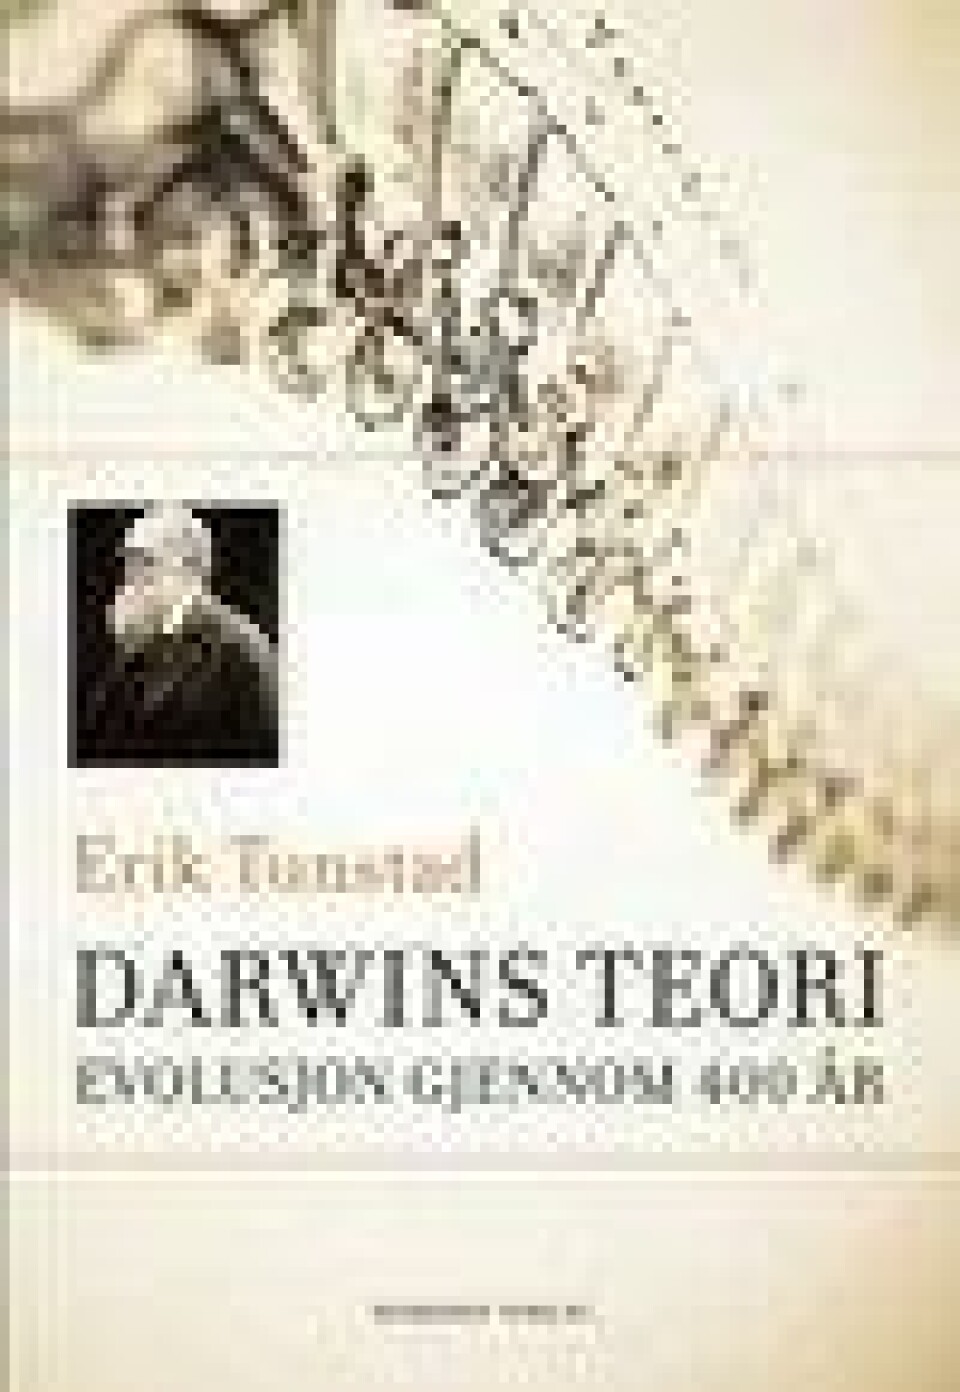 Bok: Darwins teori: Evolusjon gjennom 400 år – av Erik Tunstad.)